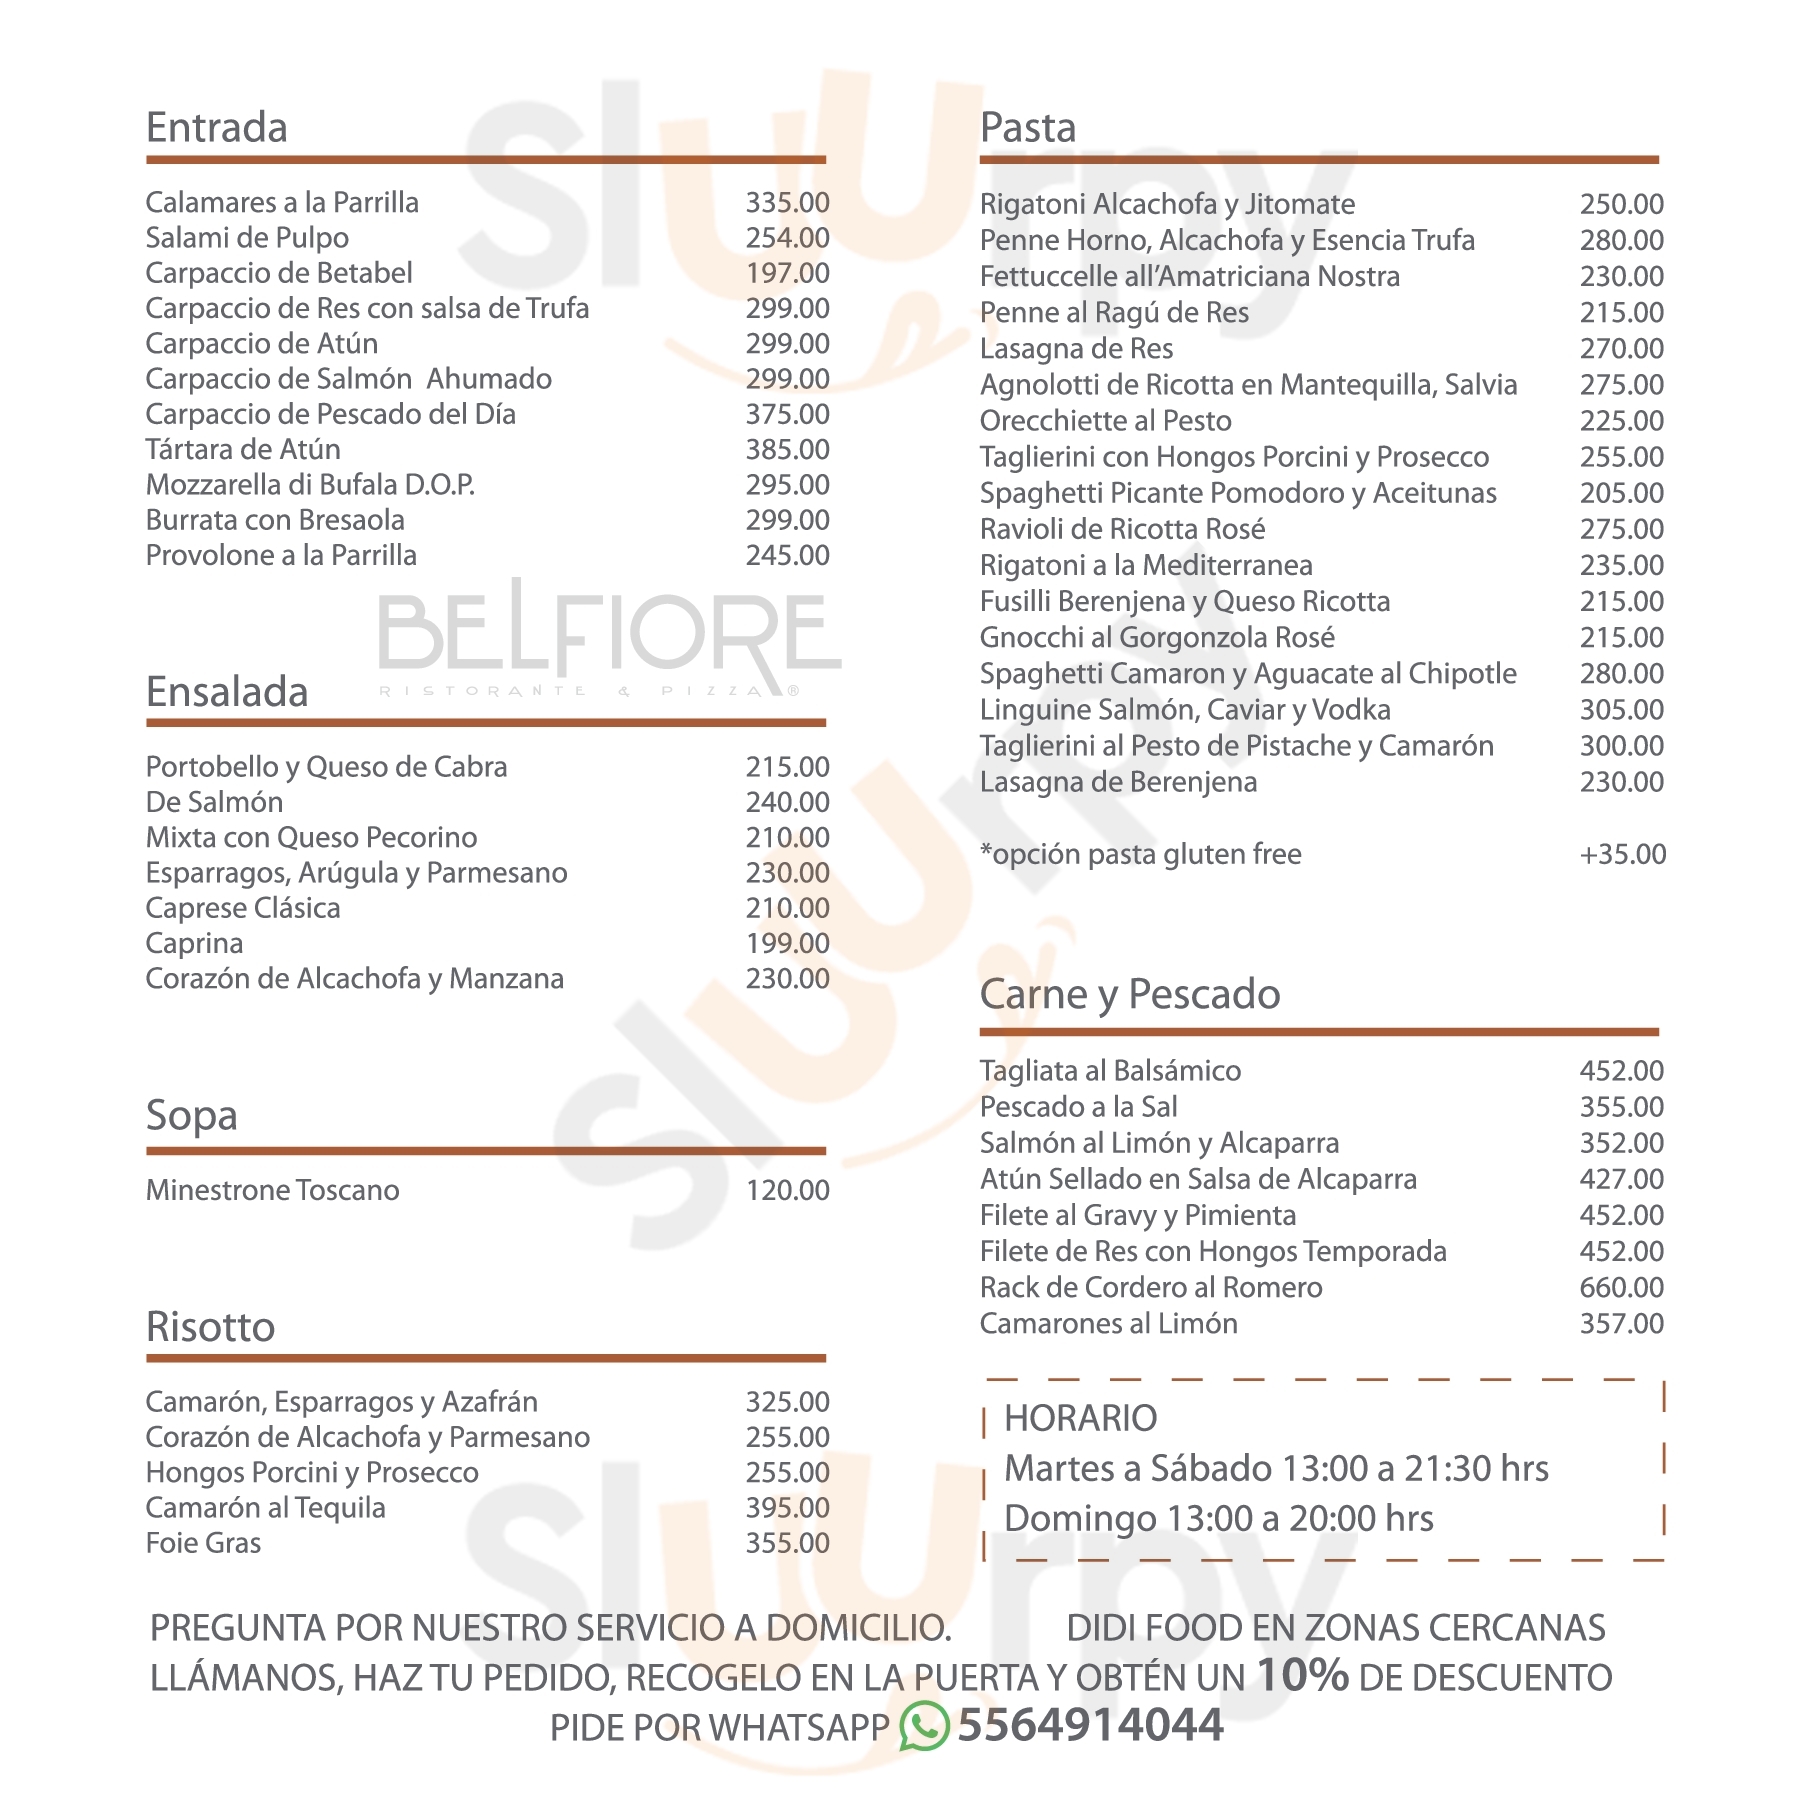 Belfiore Ristorante & Pizza Ciudad de México Menu - 1